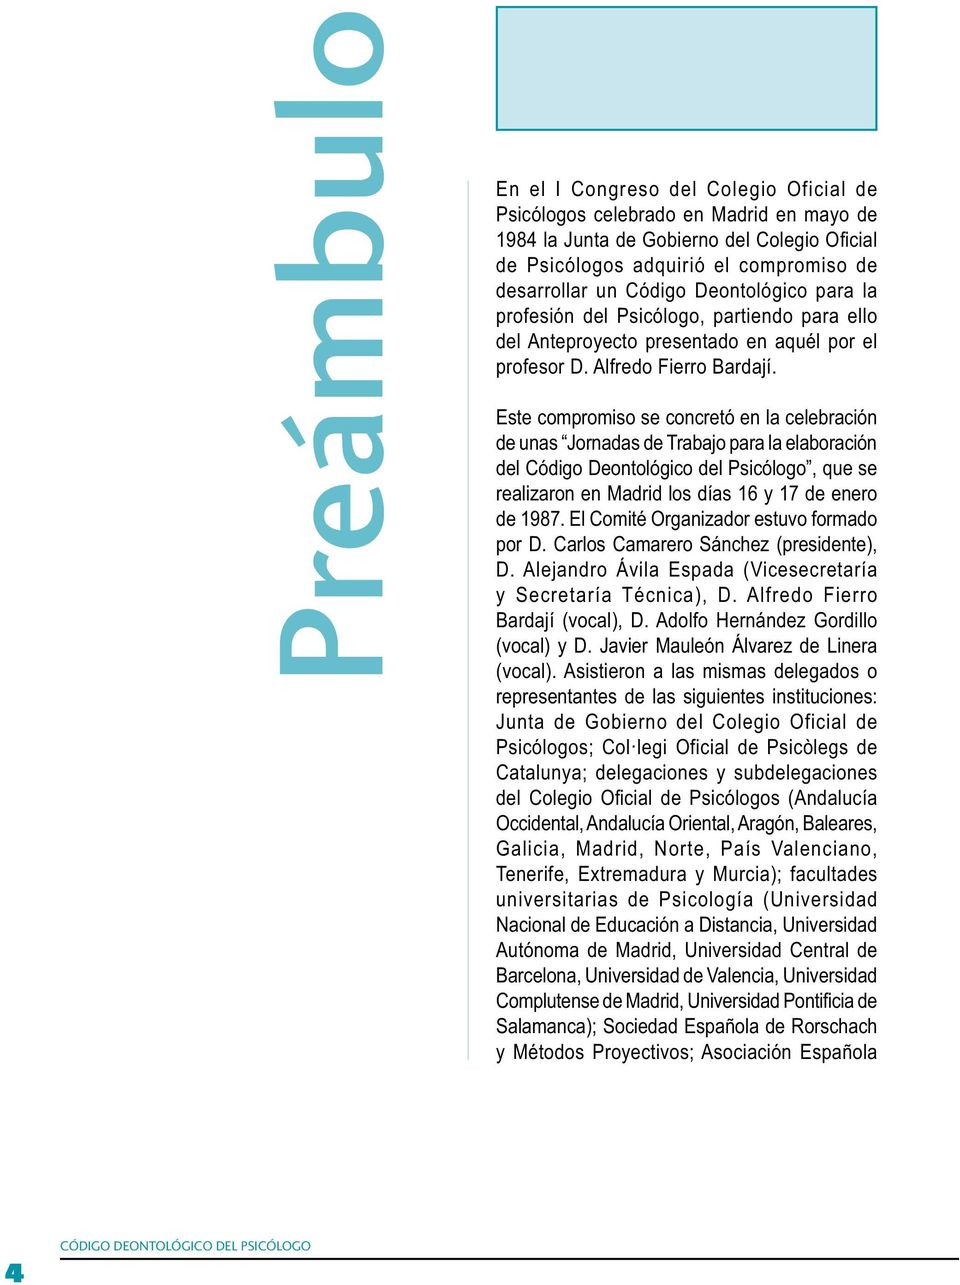 Este compromiso se concretó en la celebración de unas Jornadas de Trabajo para la elaboración del Código Deontológico del Psicólogo, que se realizaron en Madrid los días 16 y 17 de enero de 1987.